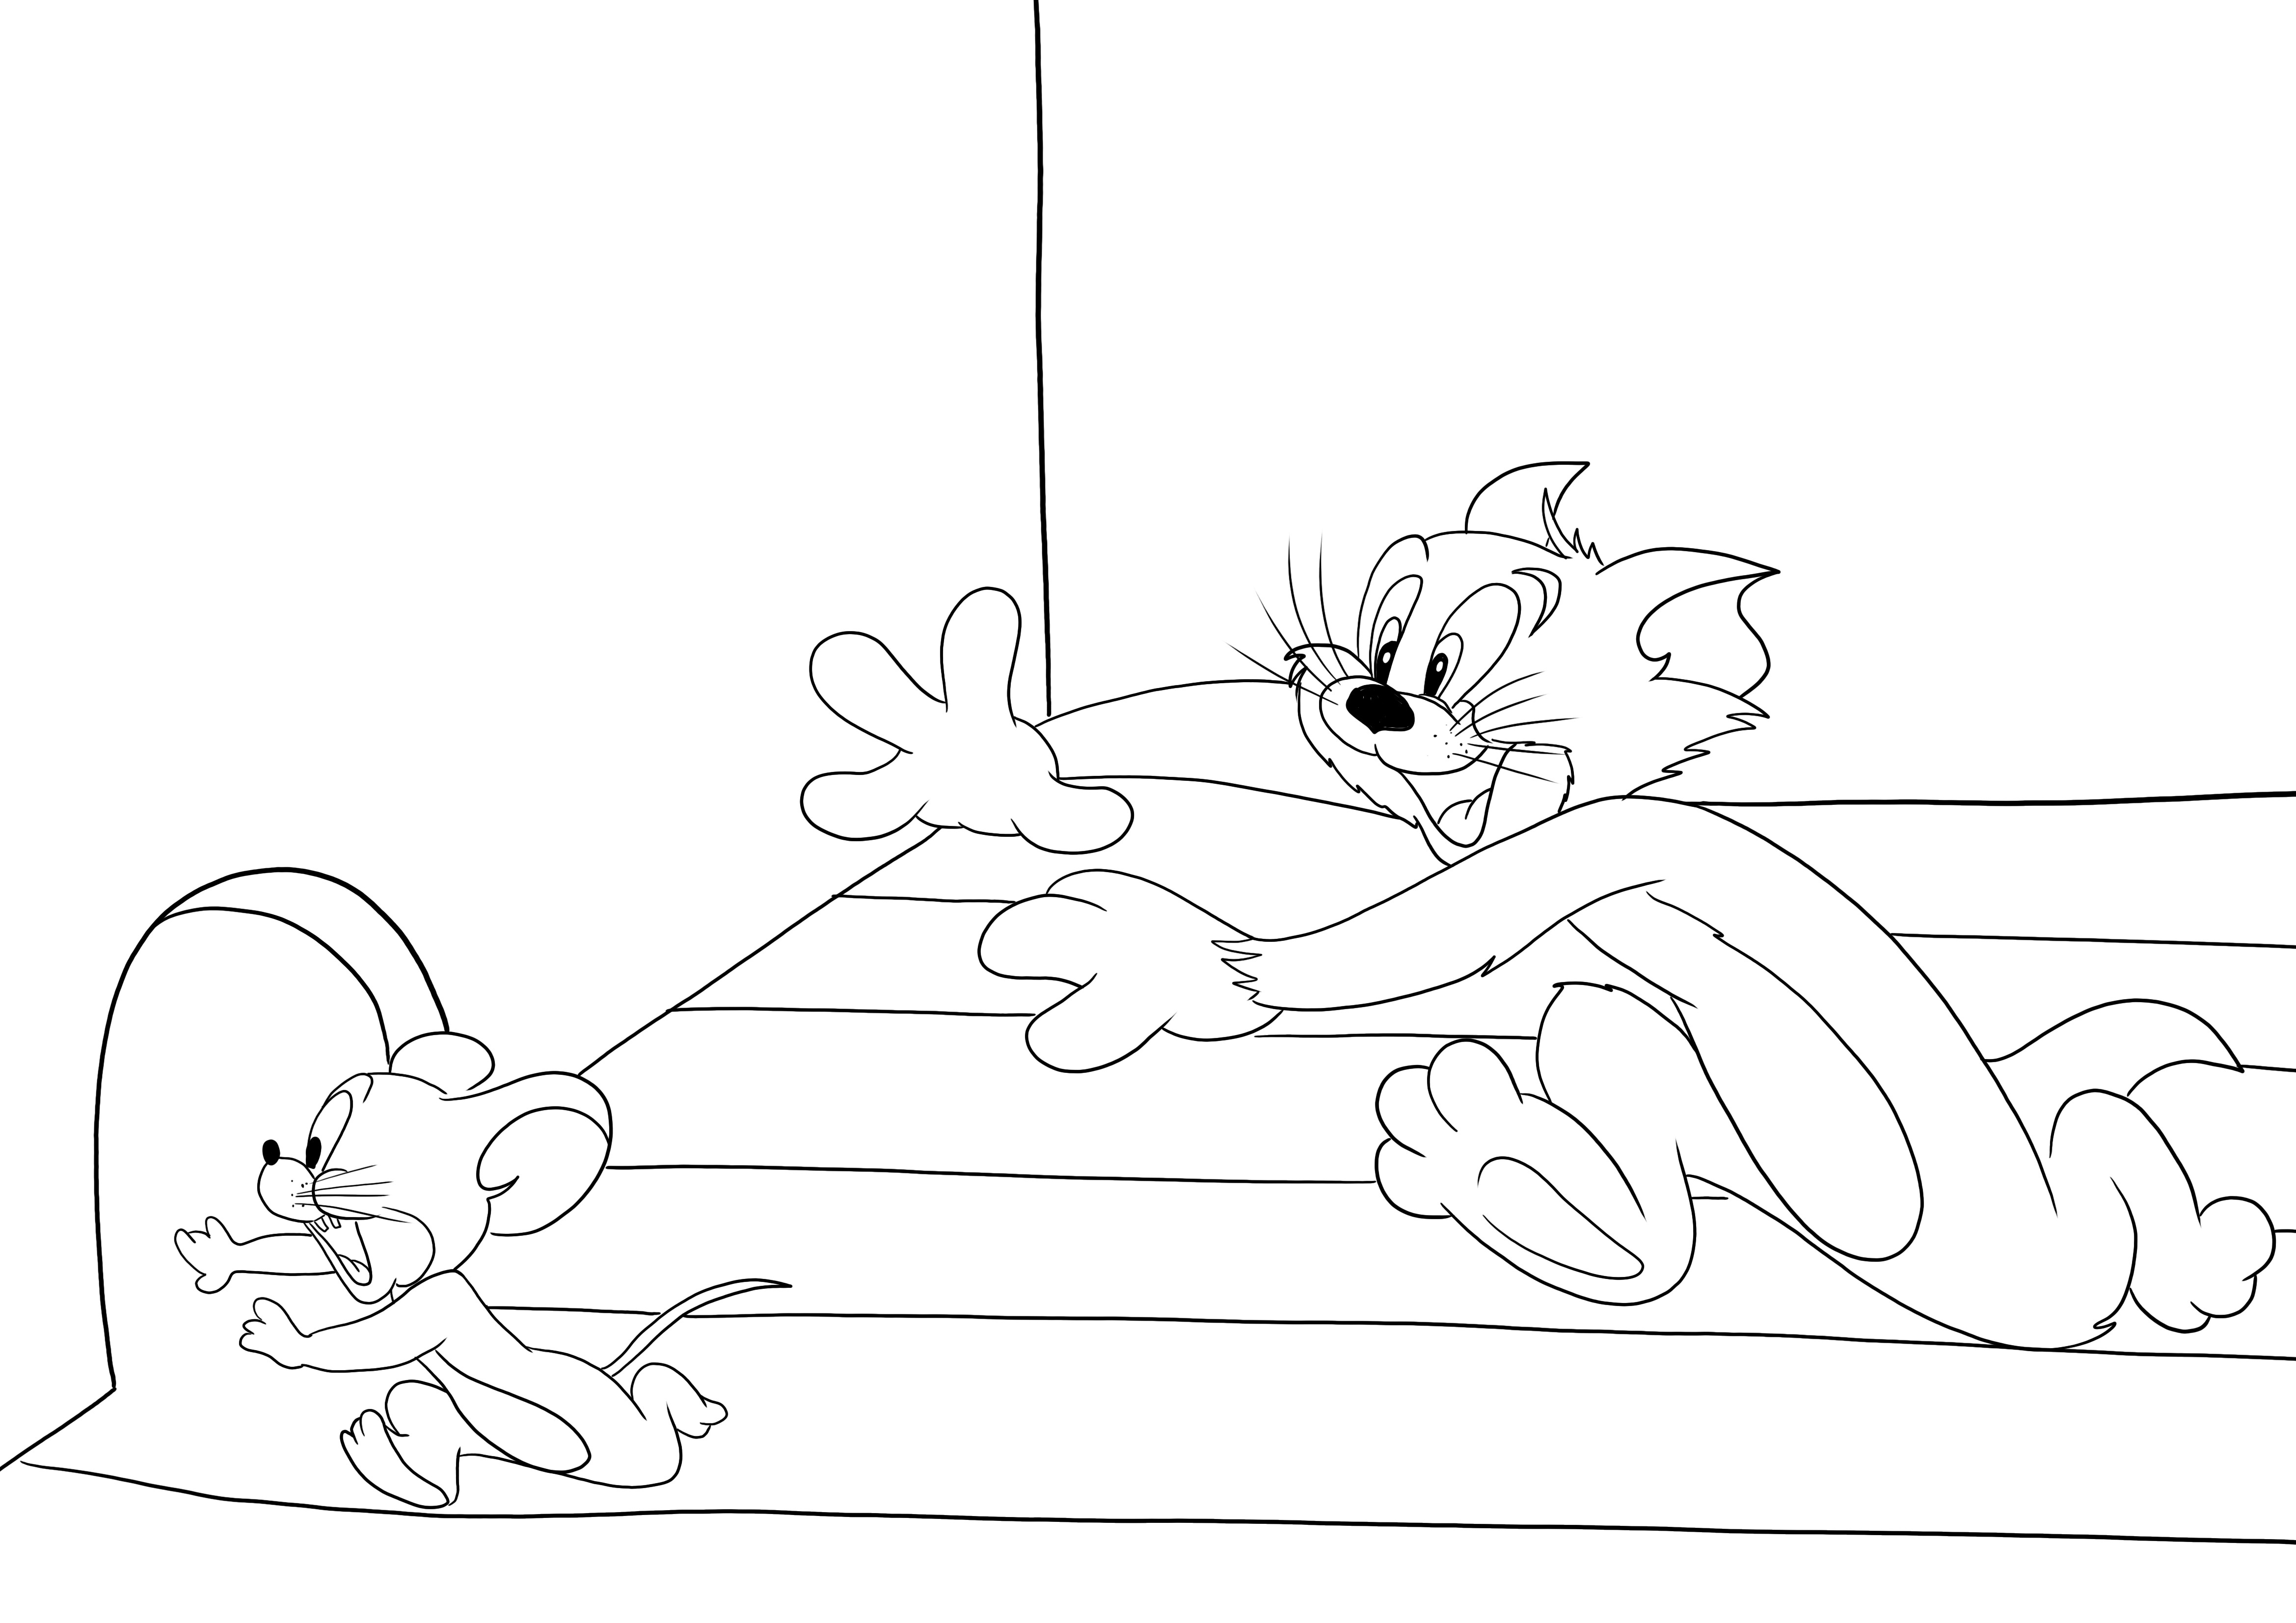 O imagine gratuită de imprimat și de colorat a lui Jerry care fuge de Tom pentru copii